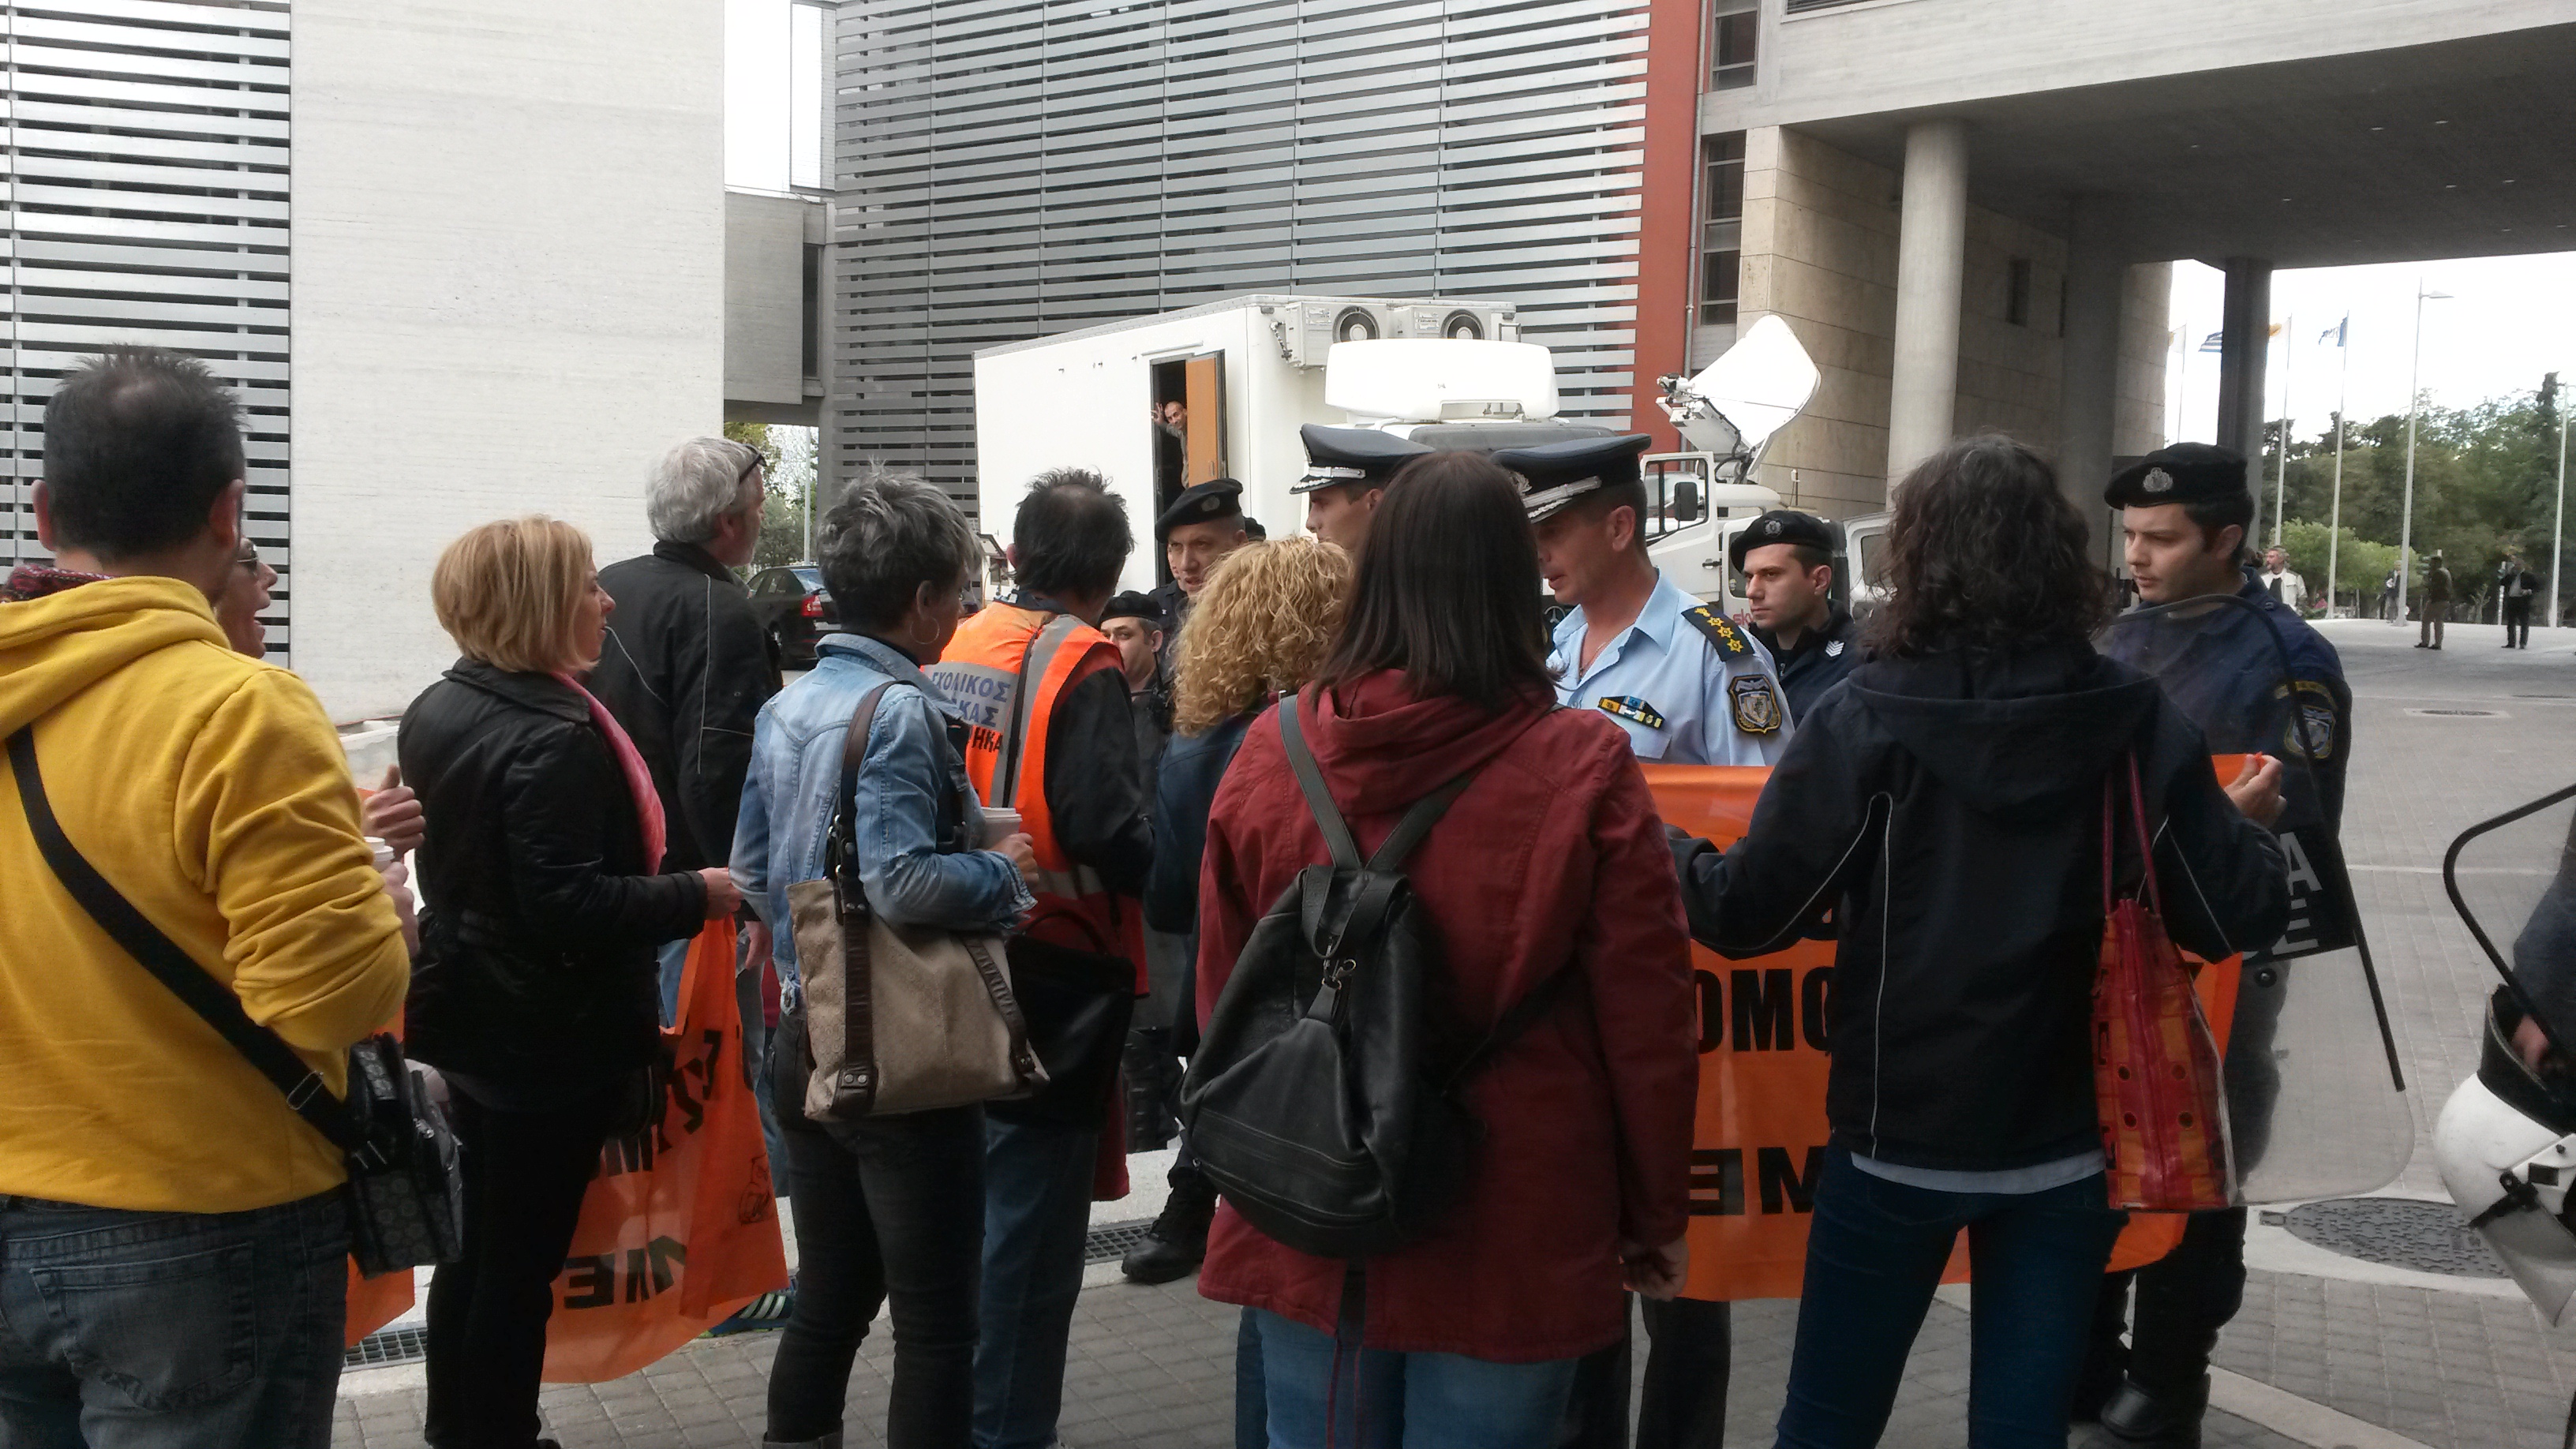 Διαμαρτυρία έξω από ομιλία του Βενιζέλου στο Δημαρχείο Θεσσαλονίκης (φωτο και βίντεο)